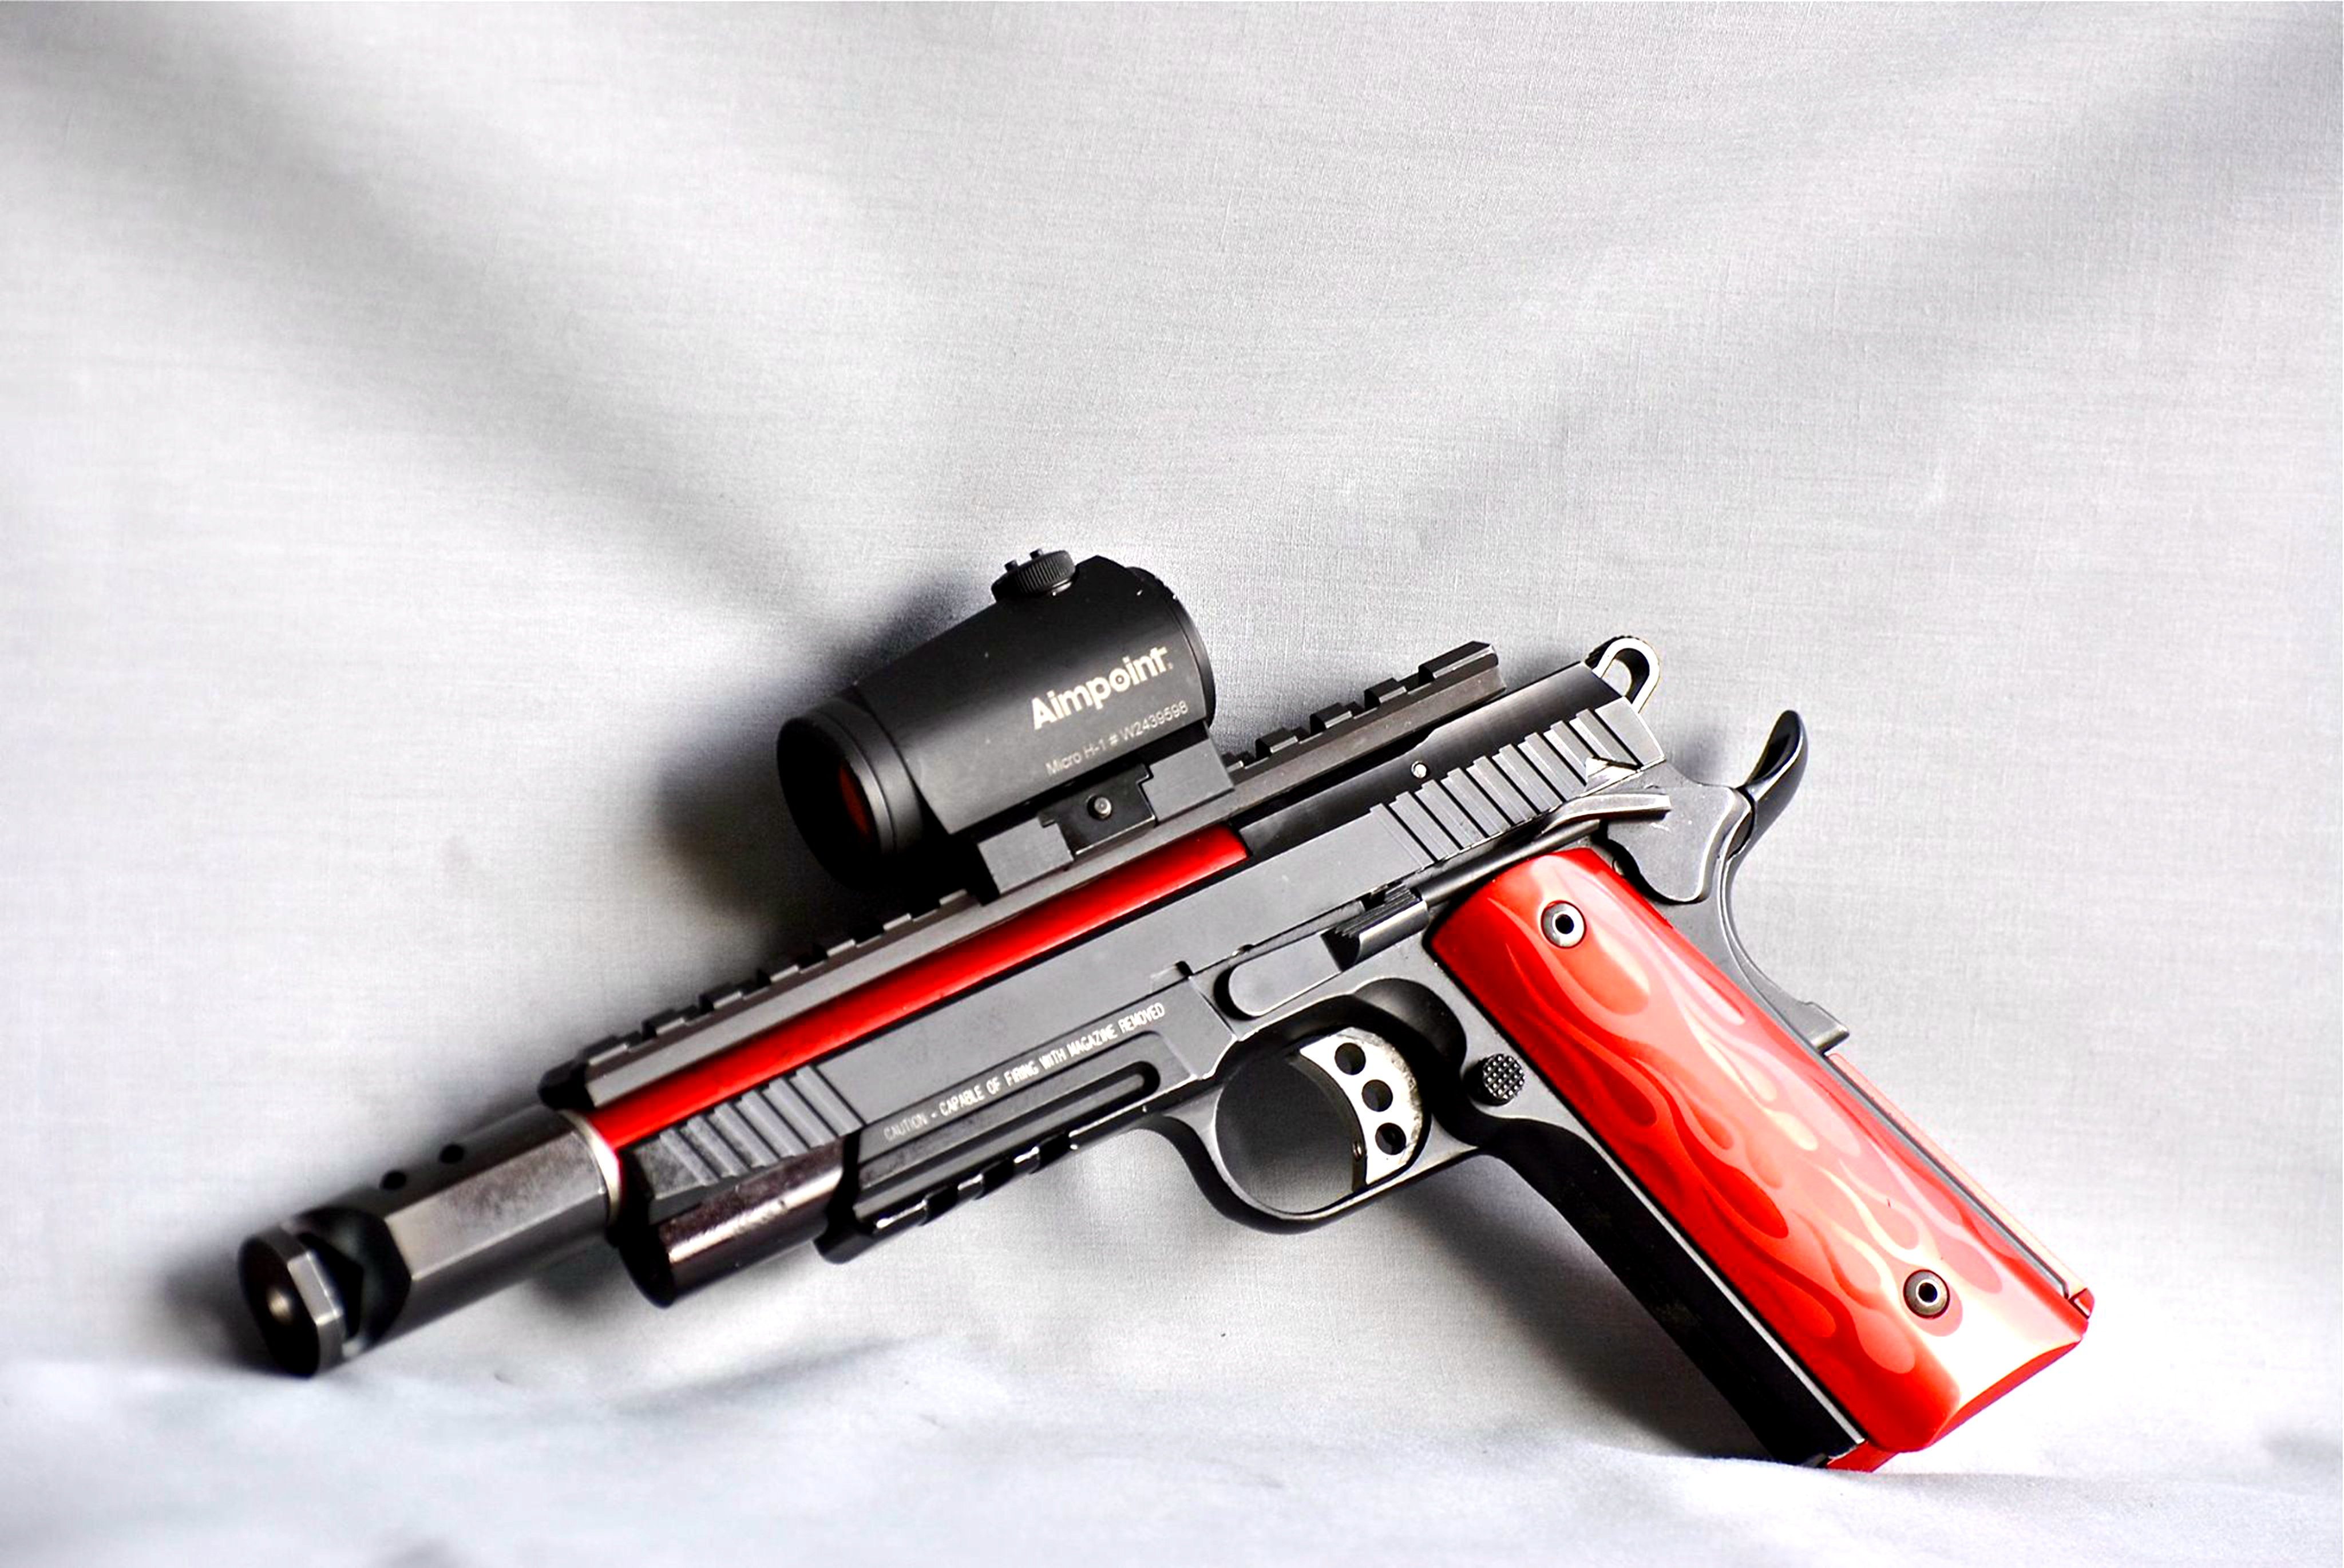 1/ 9 伯莱塔92fs:9毫米伯莱塔92fs手枪是由意大利皮雷西亚省的伯莱塔